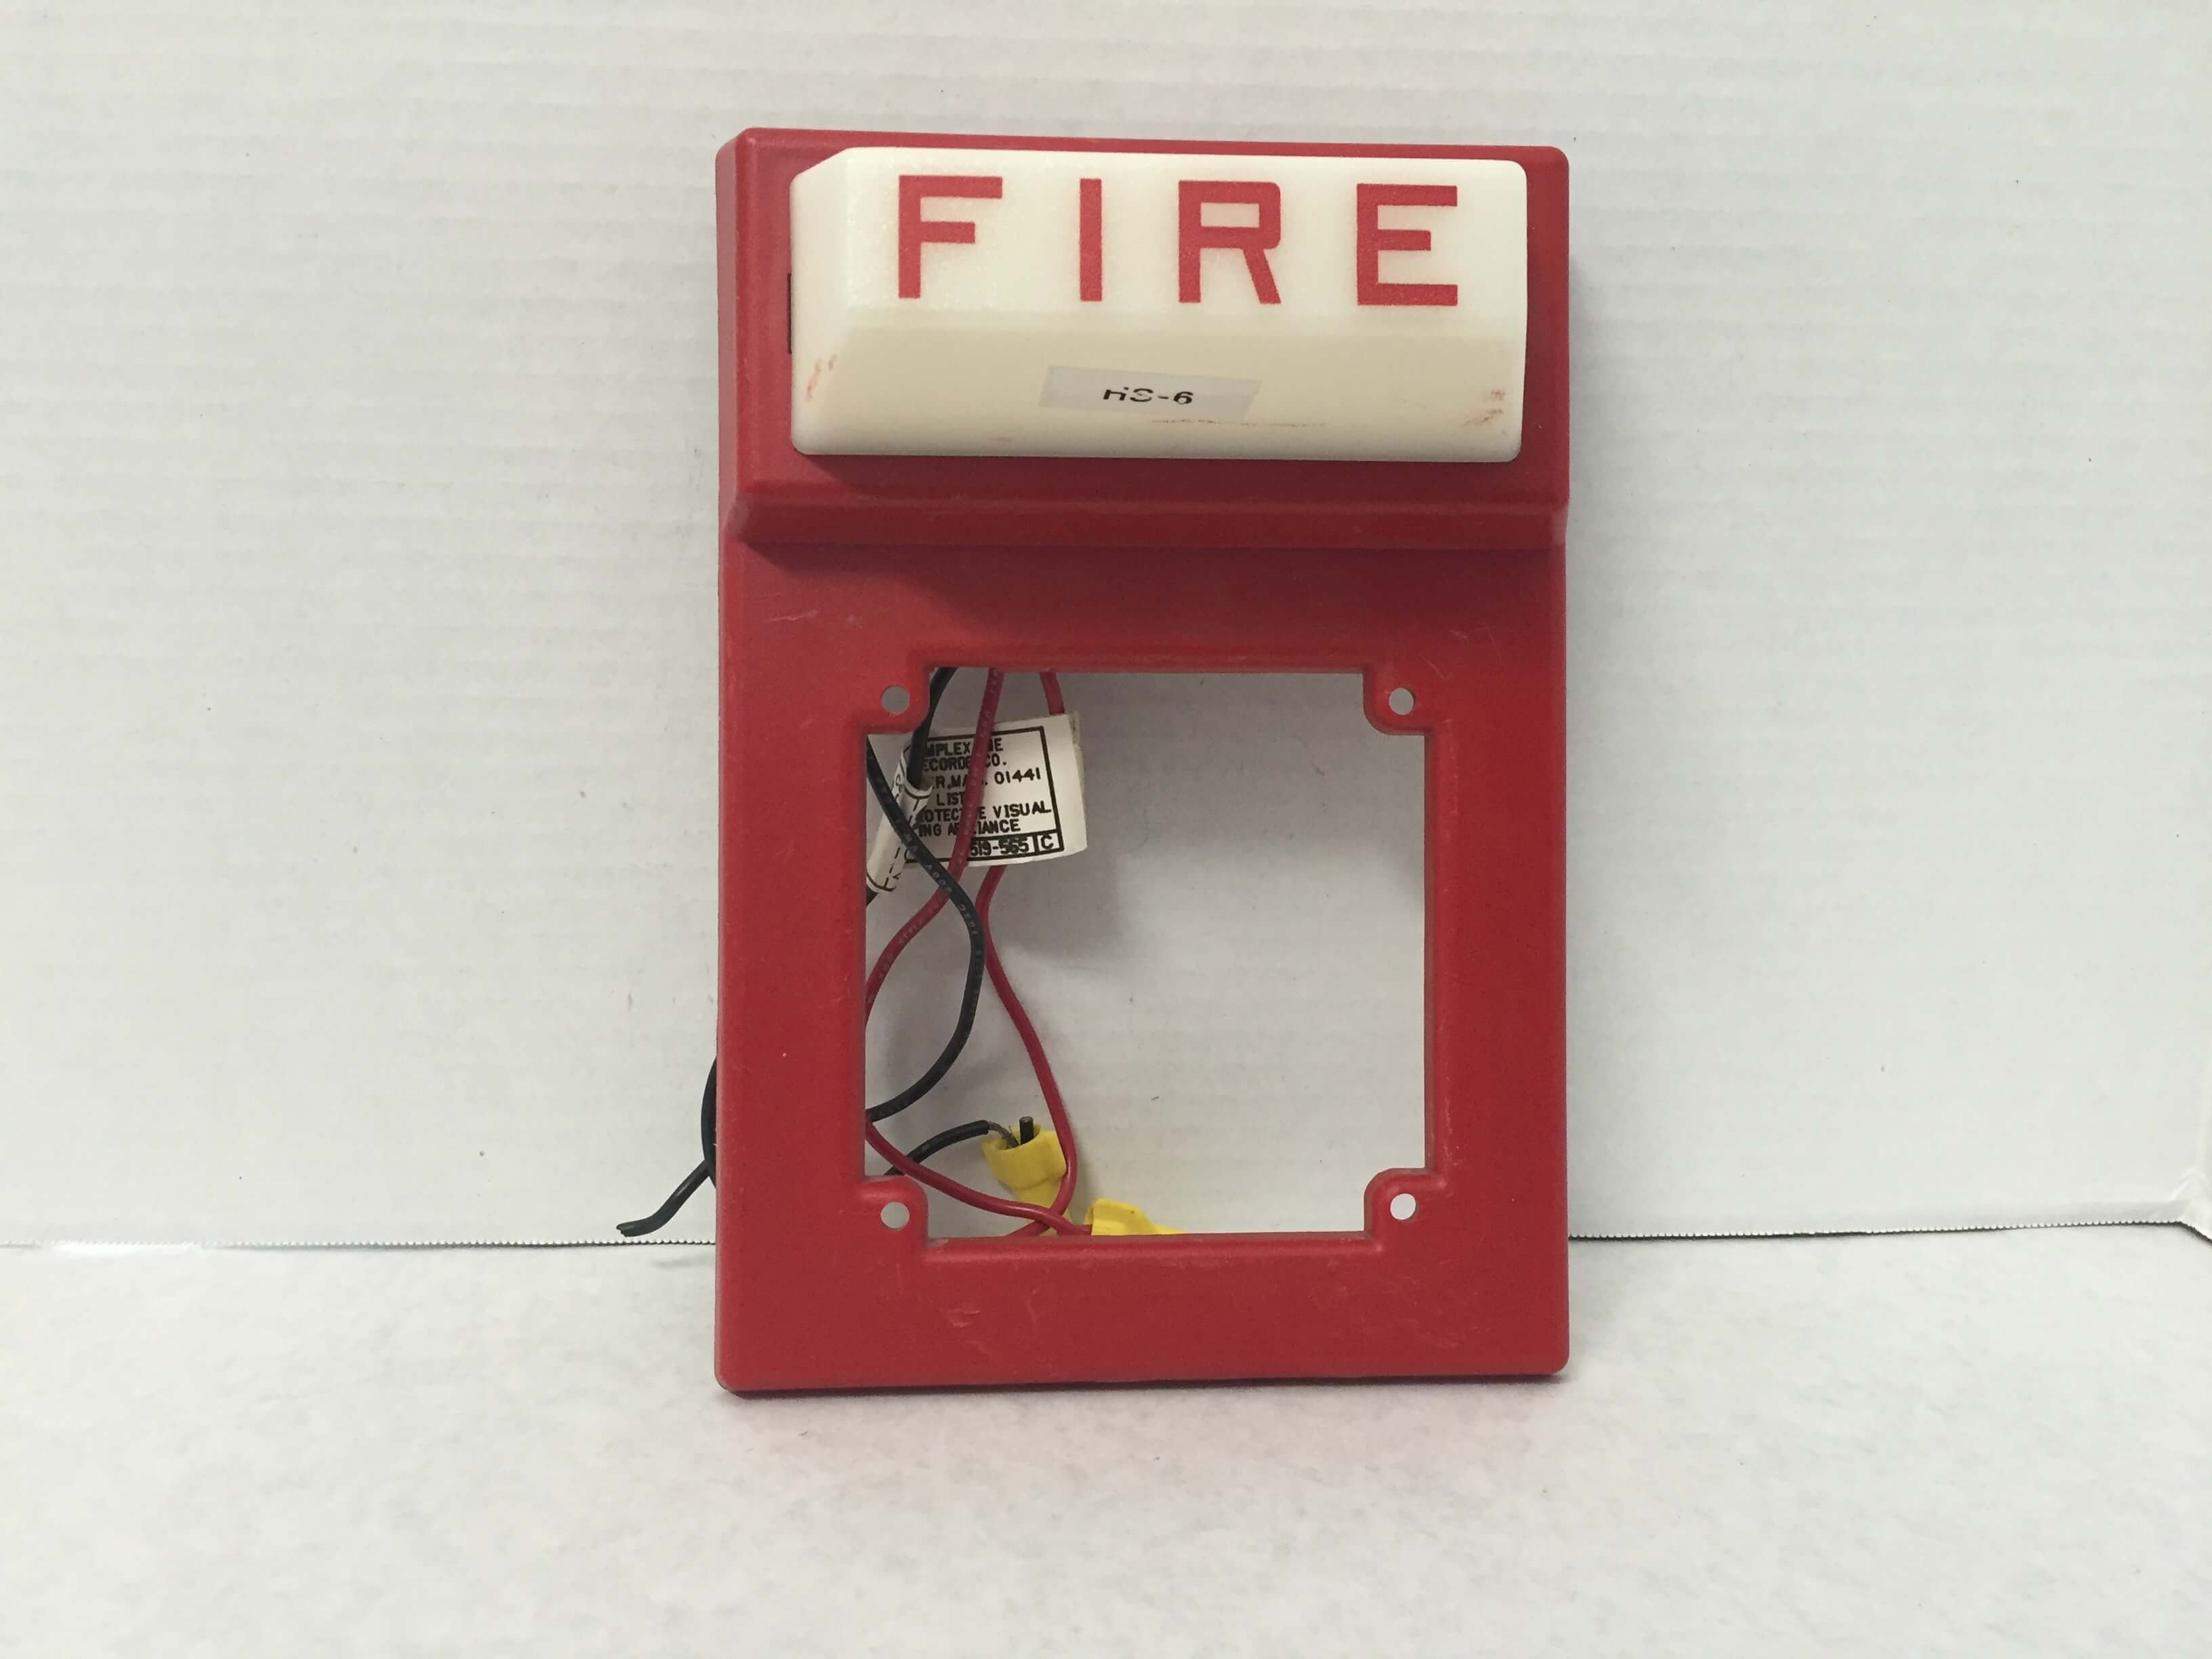 Simplex 4903-9102 - FireAlarms.tv - jjinc24/U8oL0's Fire Alarm ...